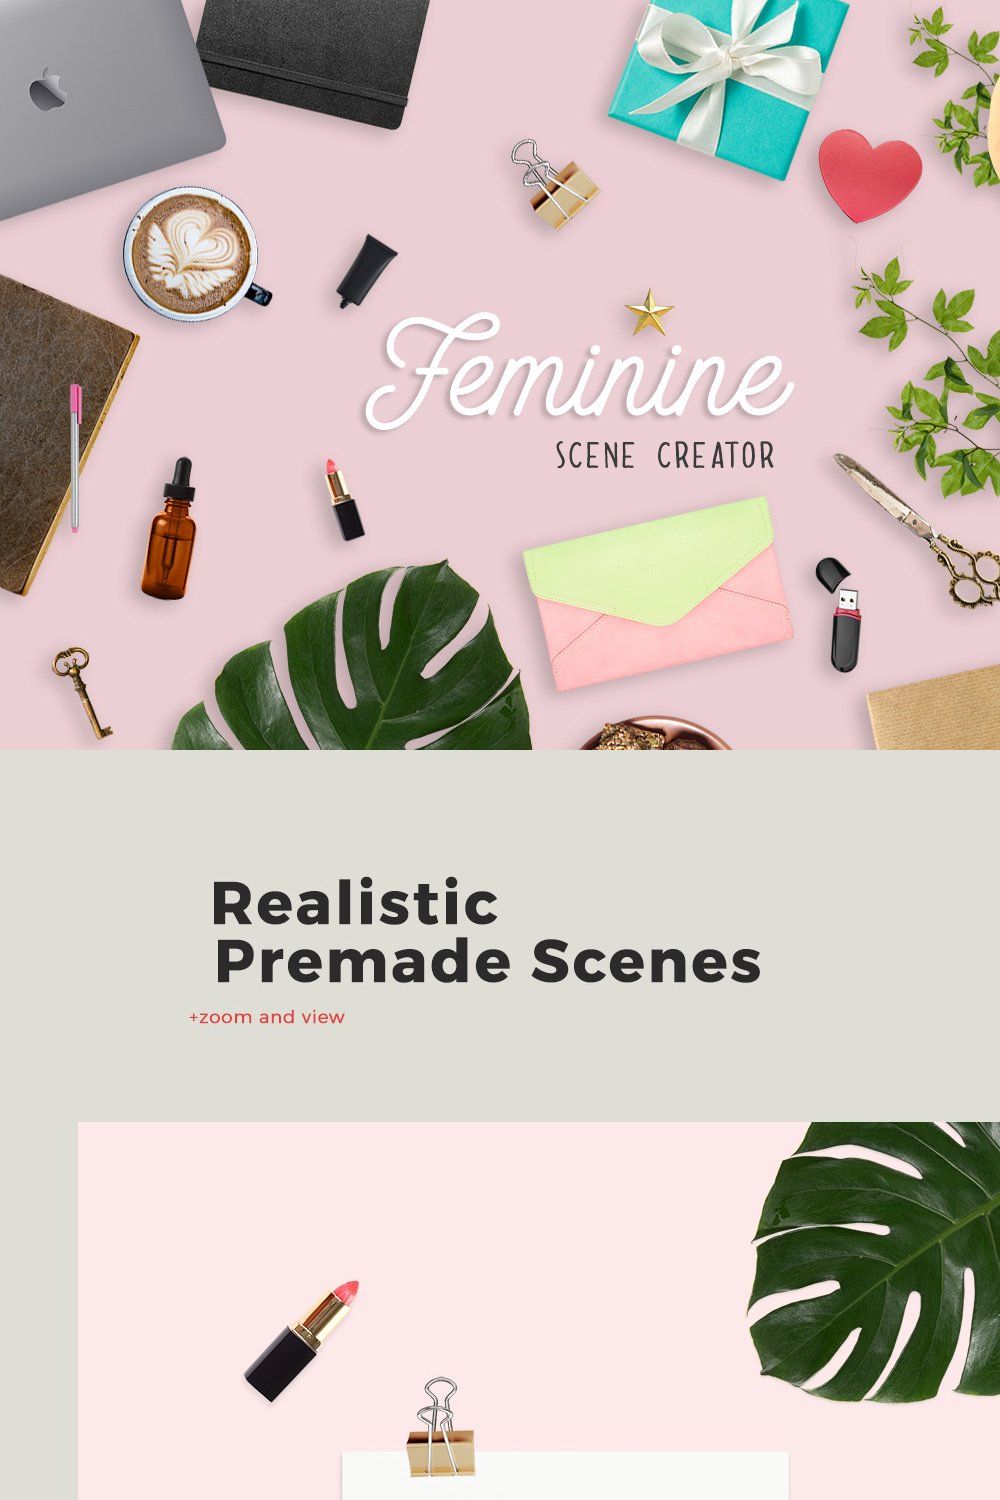 Feminine Scene Creator pinterest preview image.